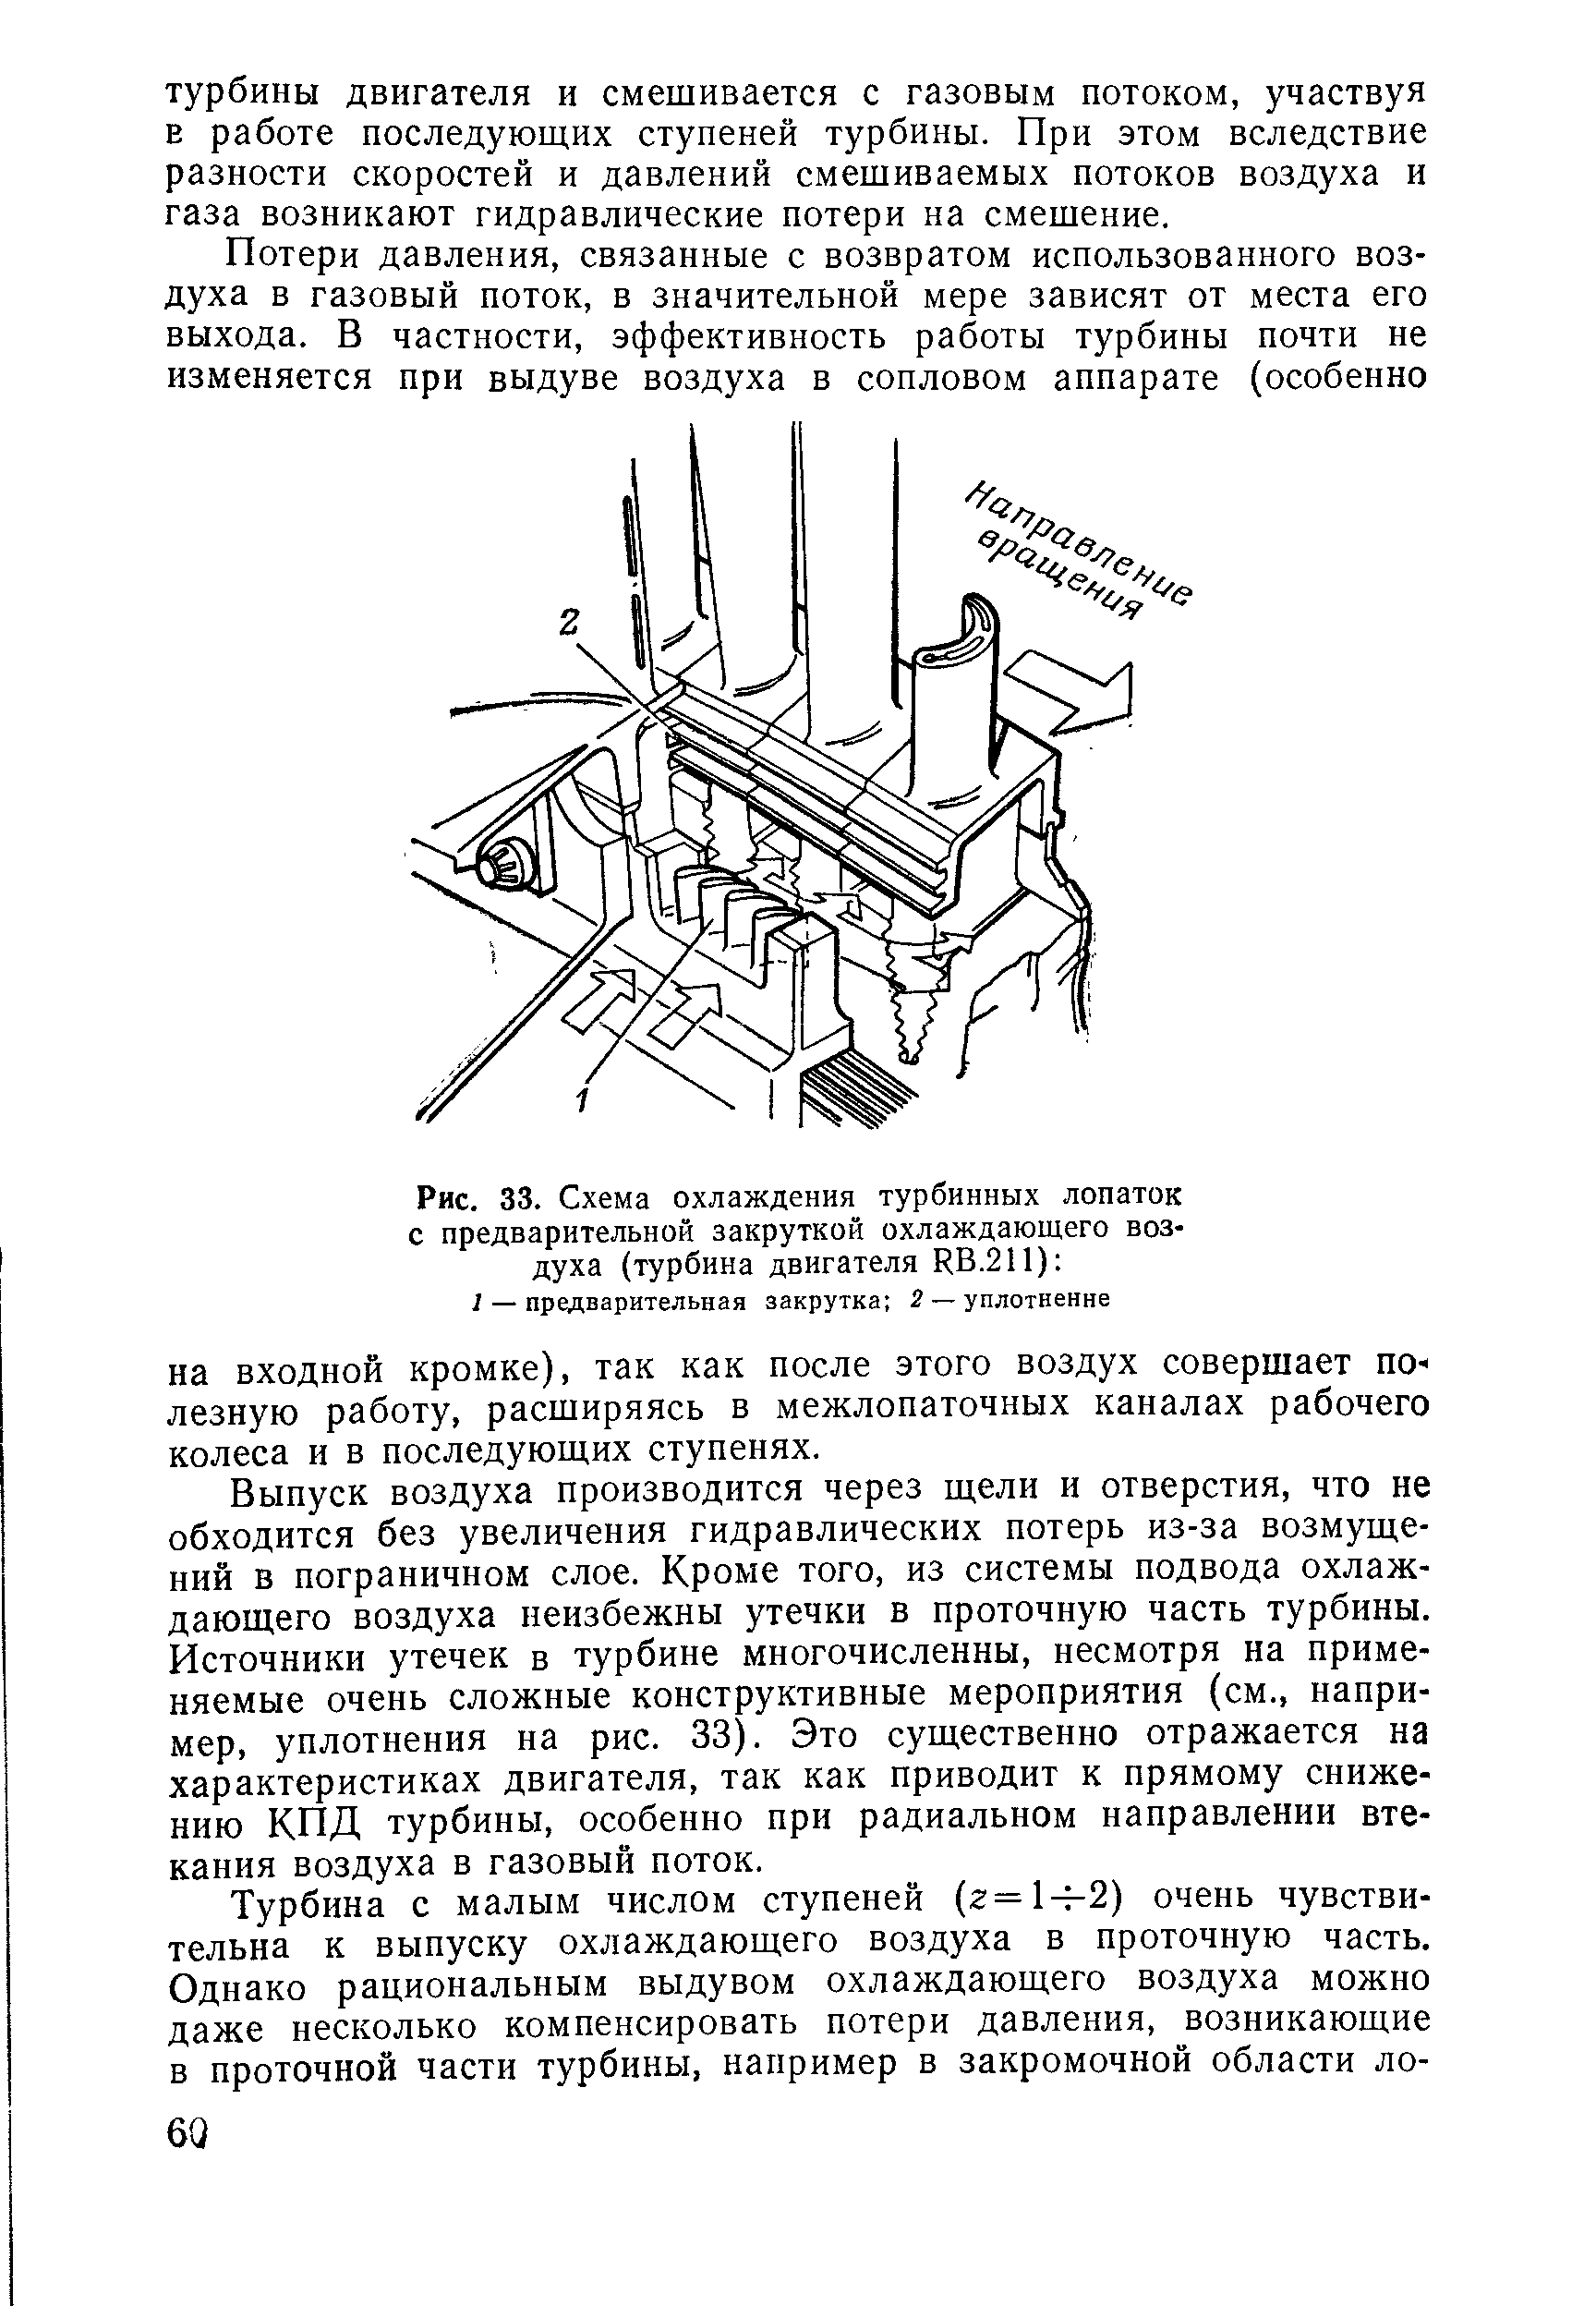 Рис. 33. Схема охлаждения турбинных лопаток с предварительной закруткой охлаждающего воздуха (турбина двигателя RB.211) 
